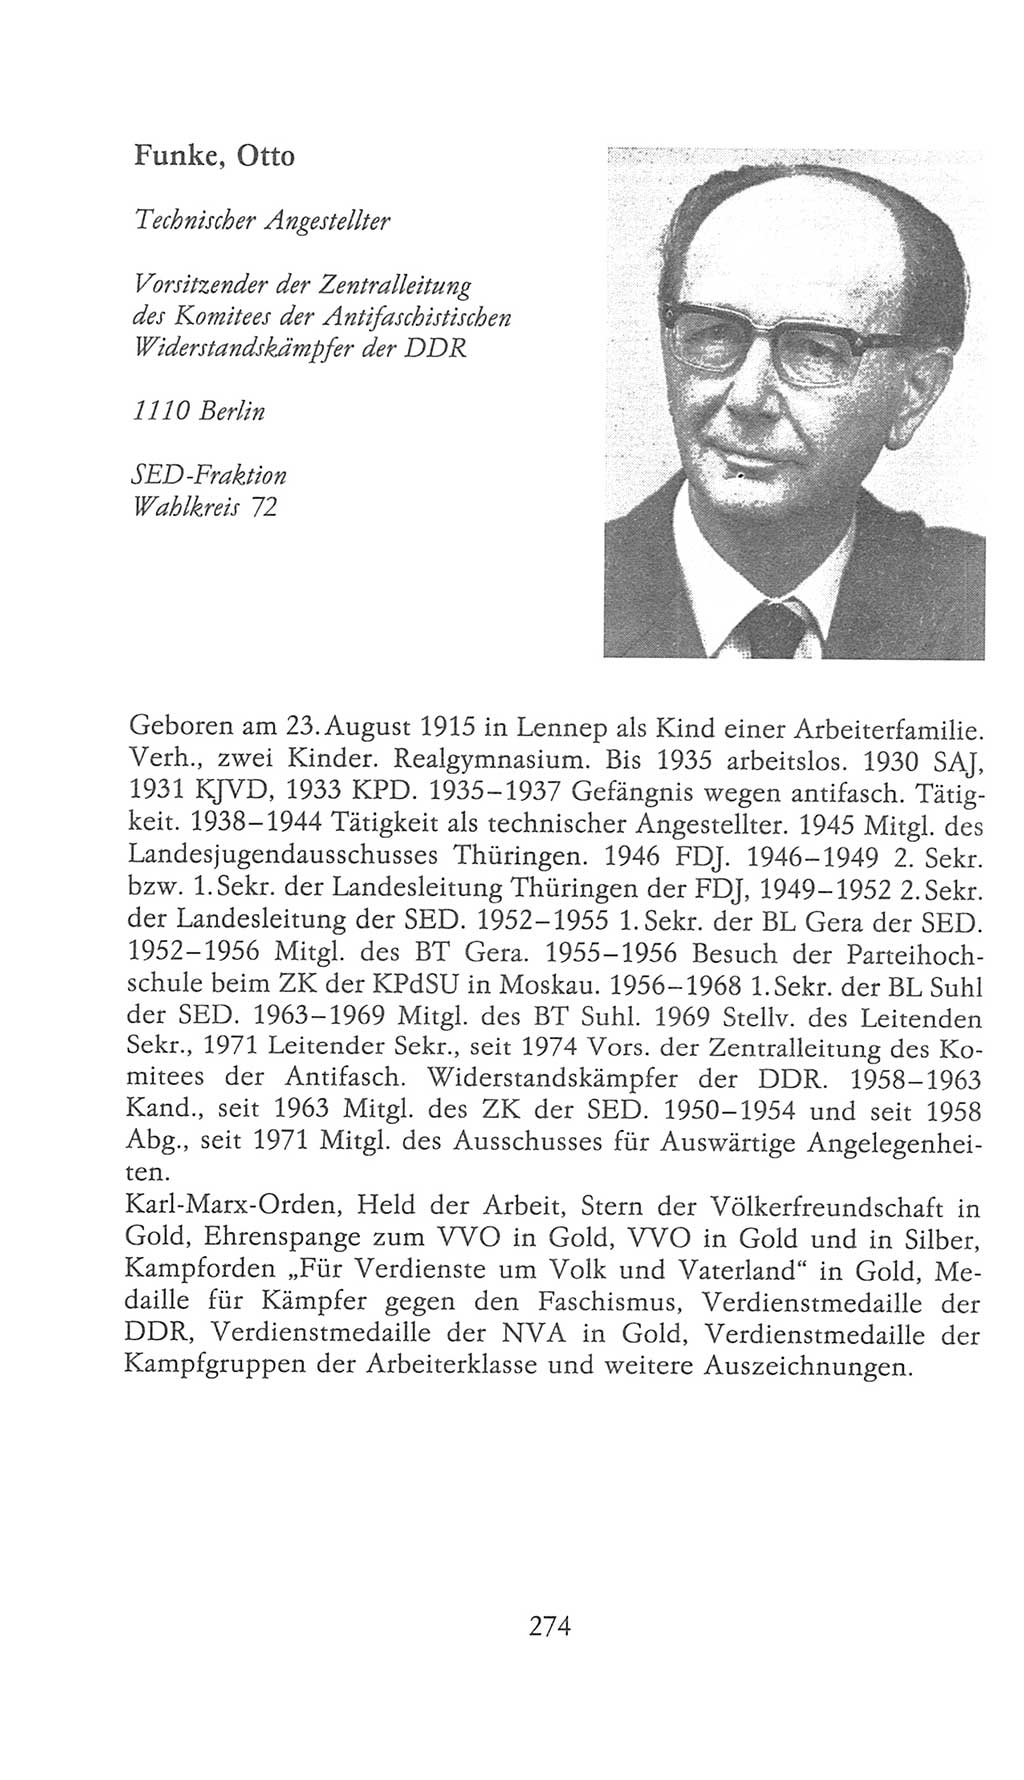 Volkskammer (VK) der Deutschen Demokratischen Republik (DDR), 9. Wahlperiode 1986-1990, Seite 274 (VK. DDR 9. WP. 1986-1990, S. 274)